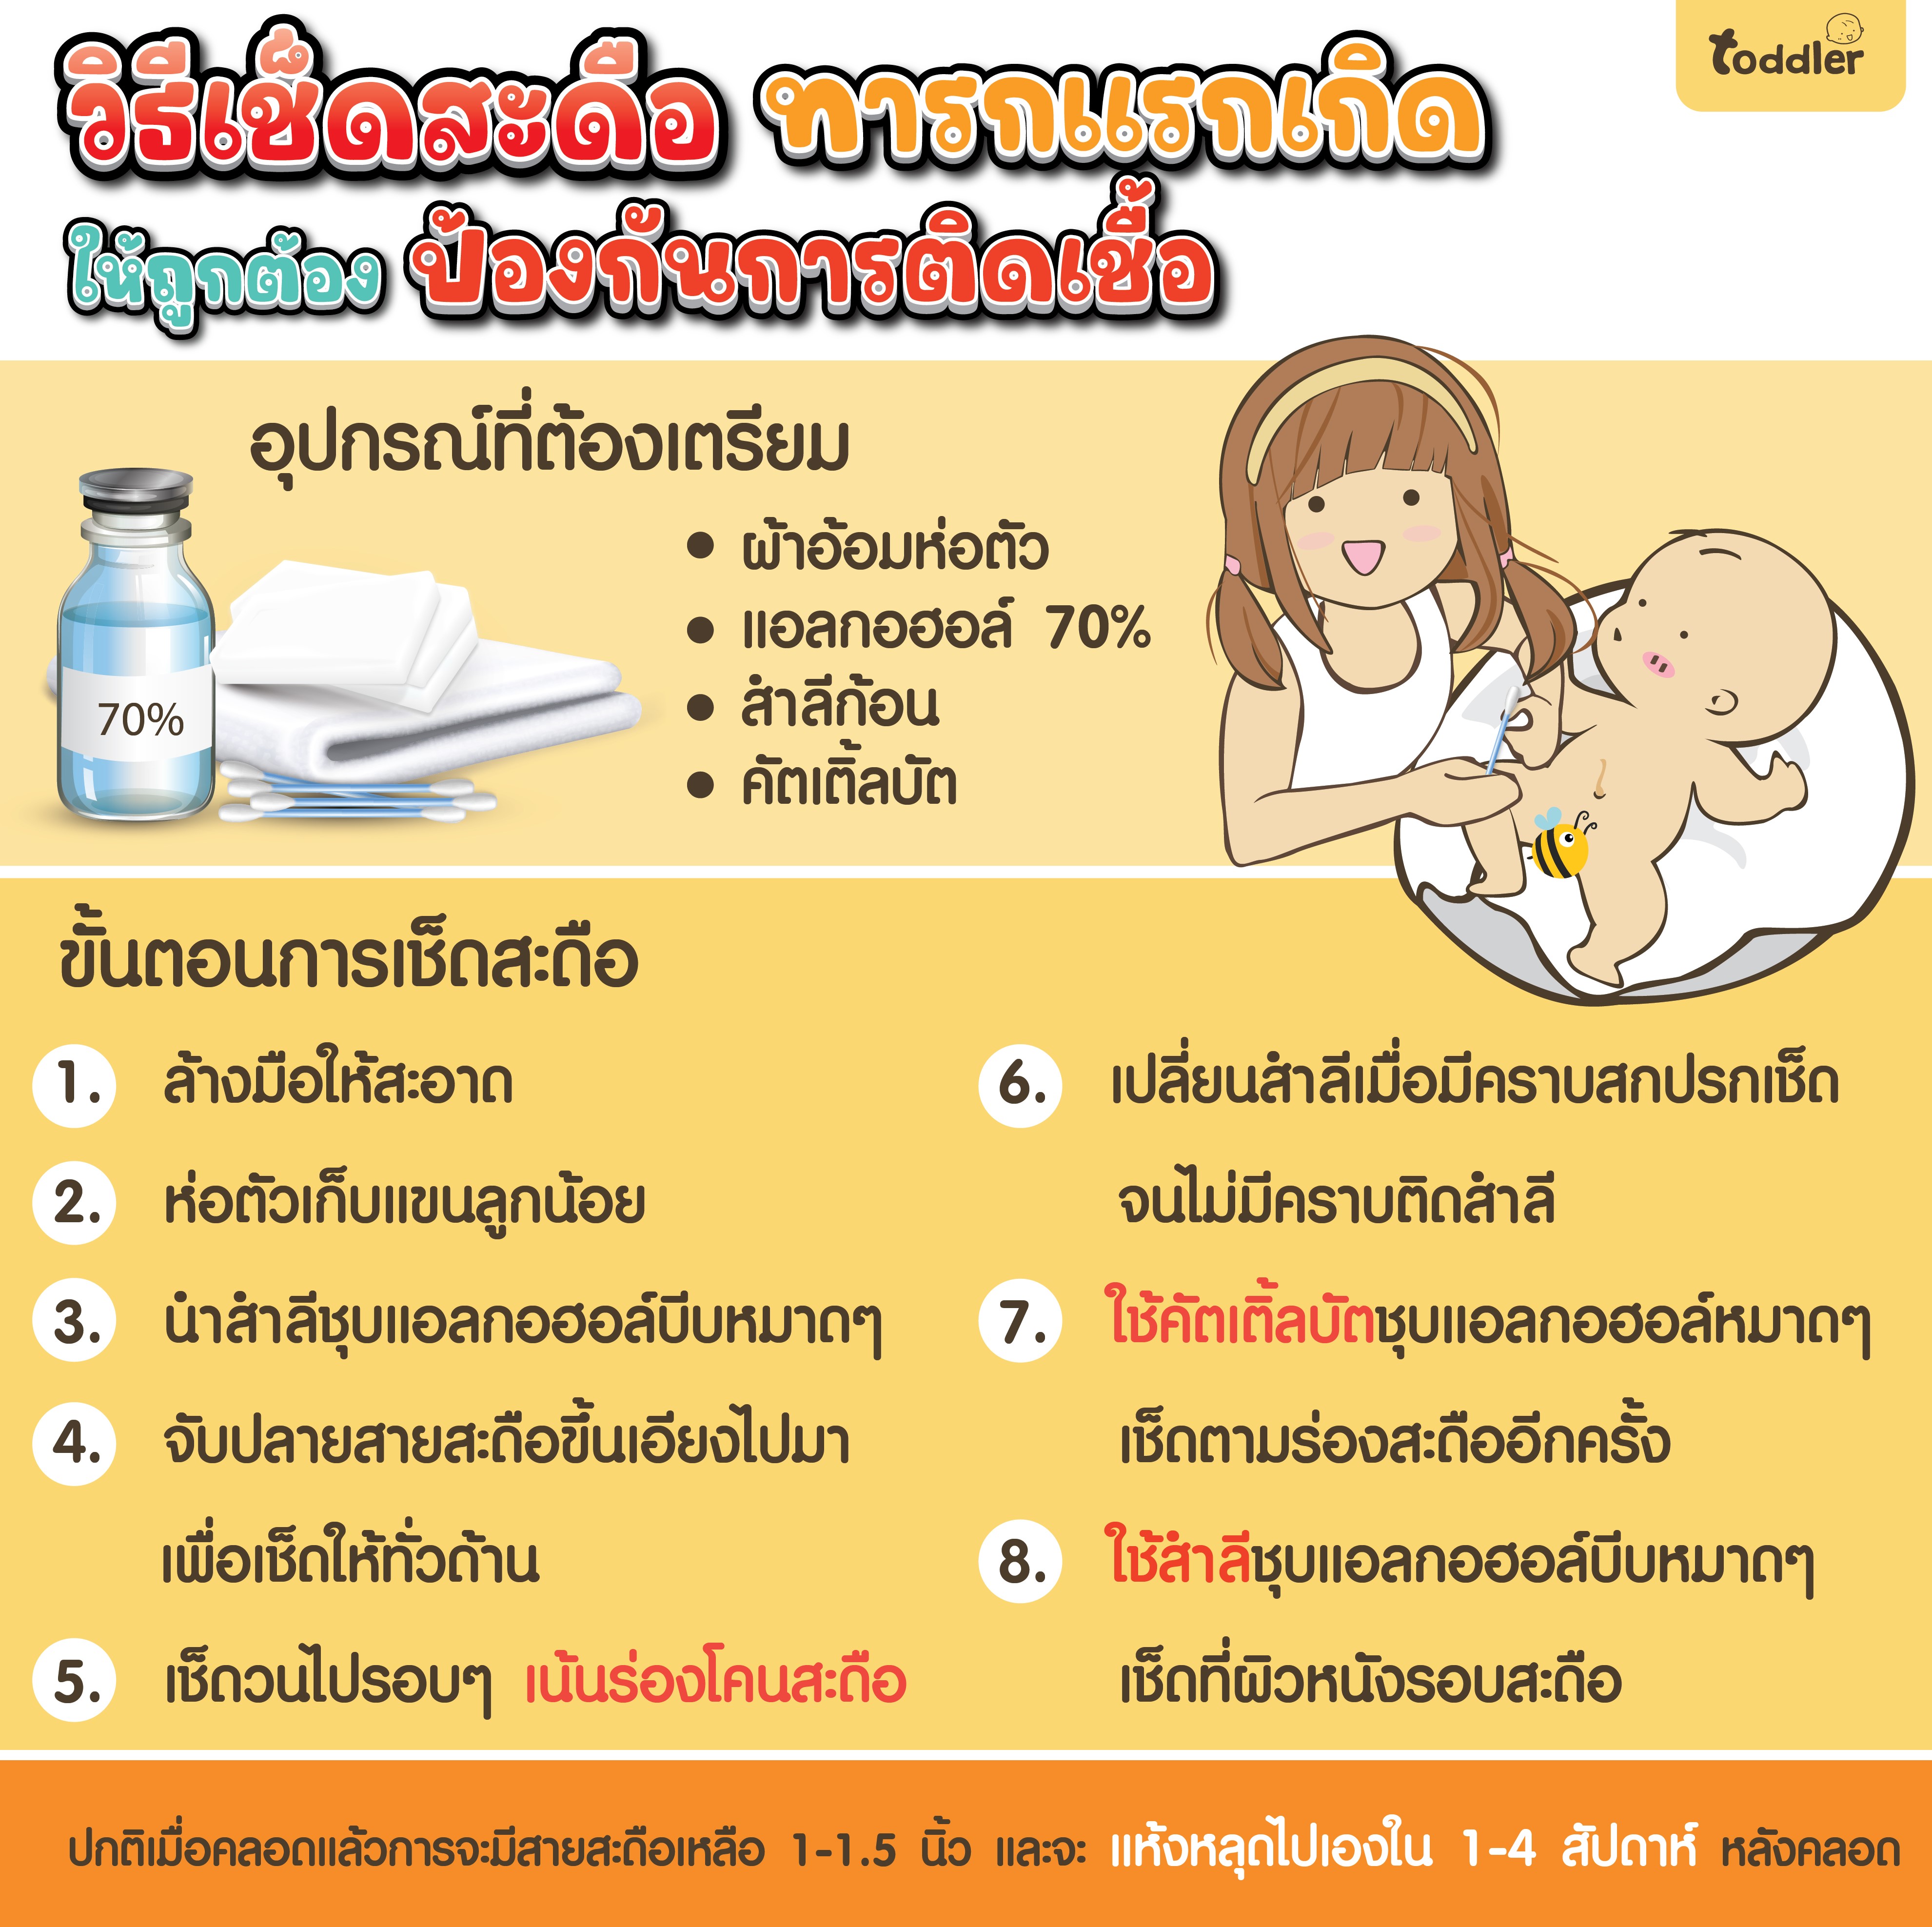 วิธีเช็ดสะดือ ทารกแรกเกิด ให้ถูกต้อง ป้องกันการติดเชื้อ